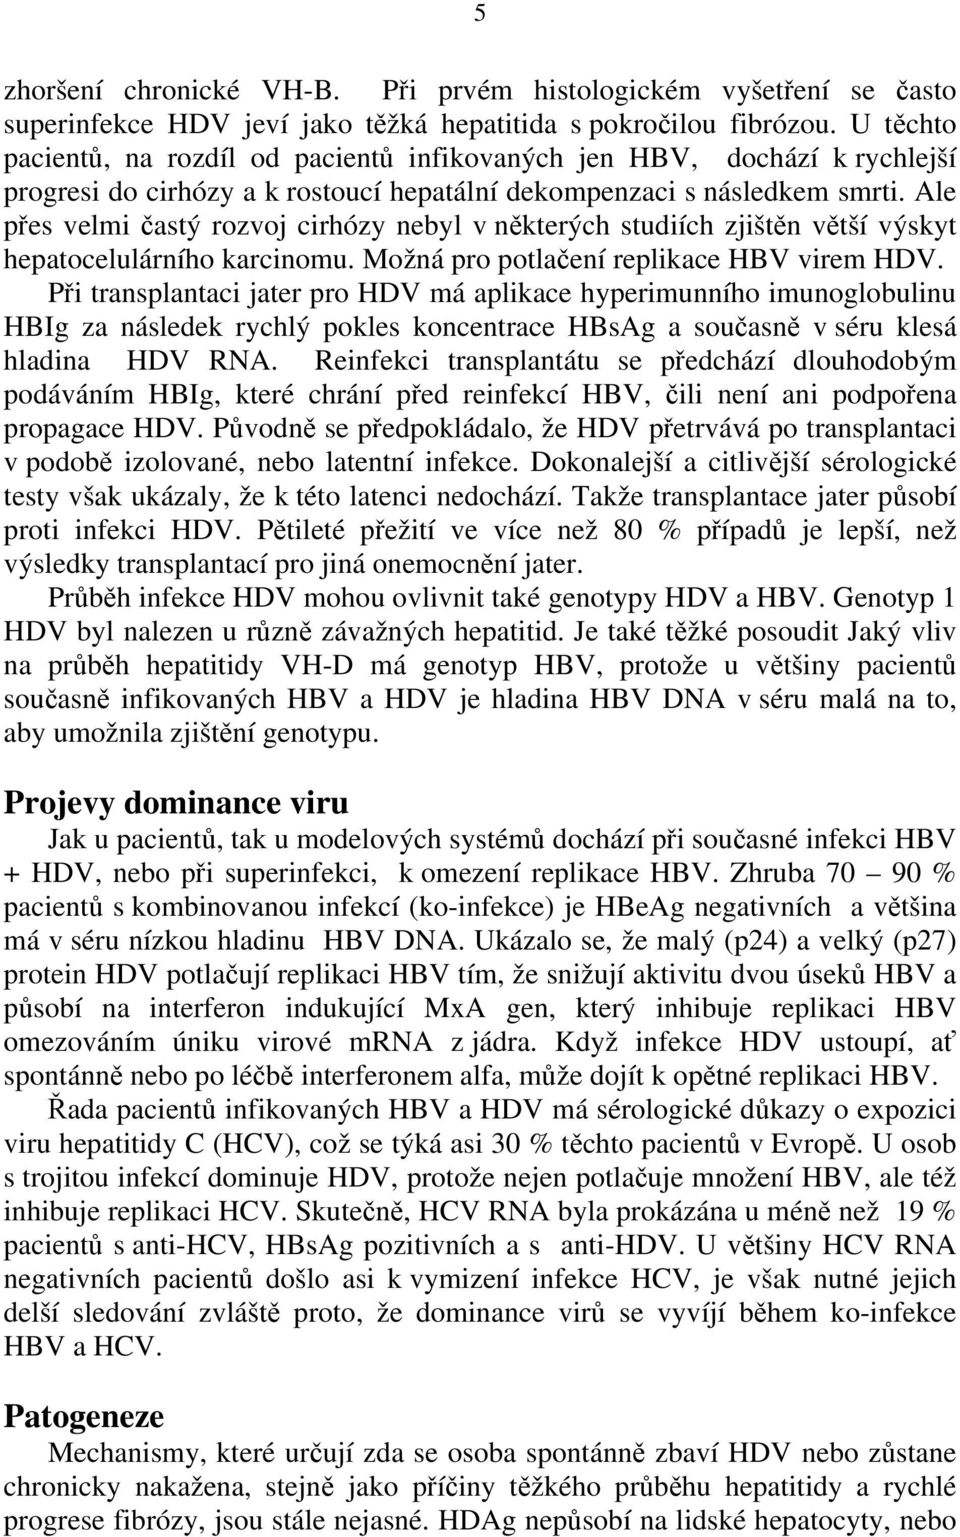 Ale přes velmi častý rozvoj cirhózy nebyl v některých studiích zjištěn větší výskyt hepatocelulárního karcinomu. Možná pro potlačení replikace HBV virem HDV.